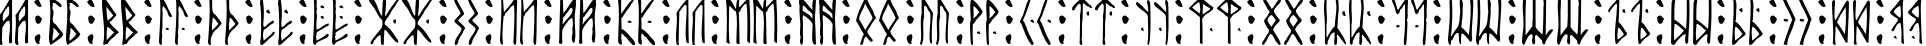 Пример написания русского алфавита шрифтом Runic AltNo